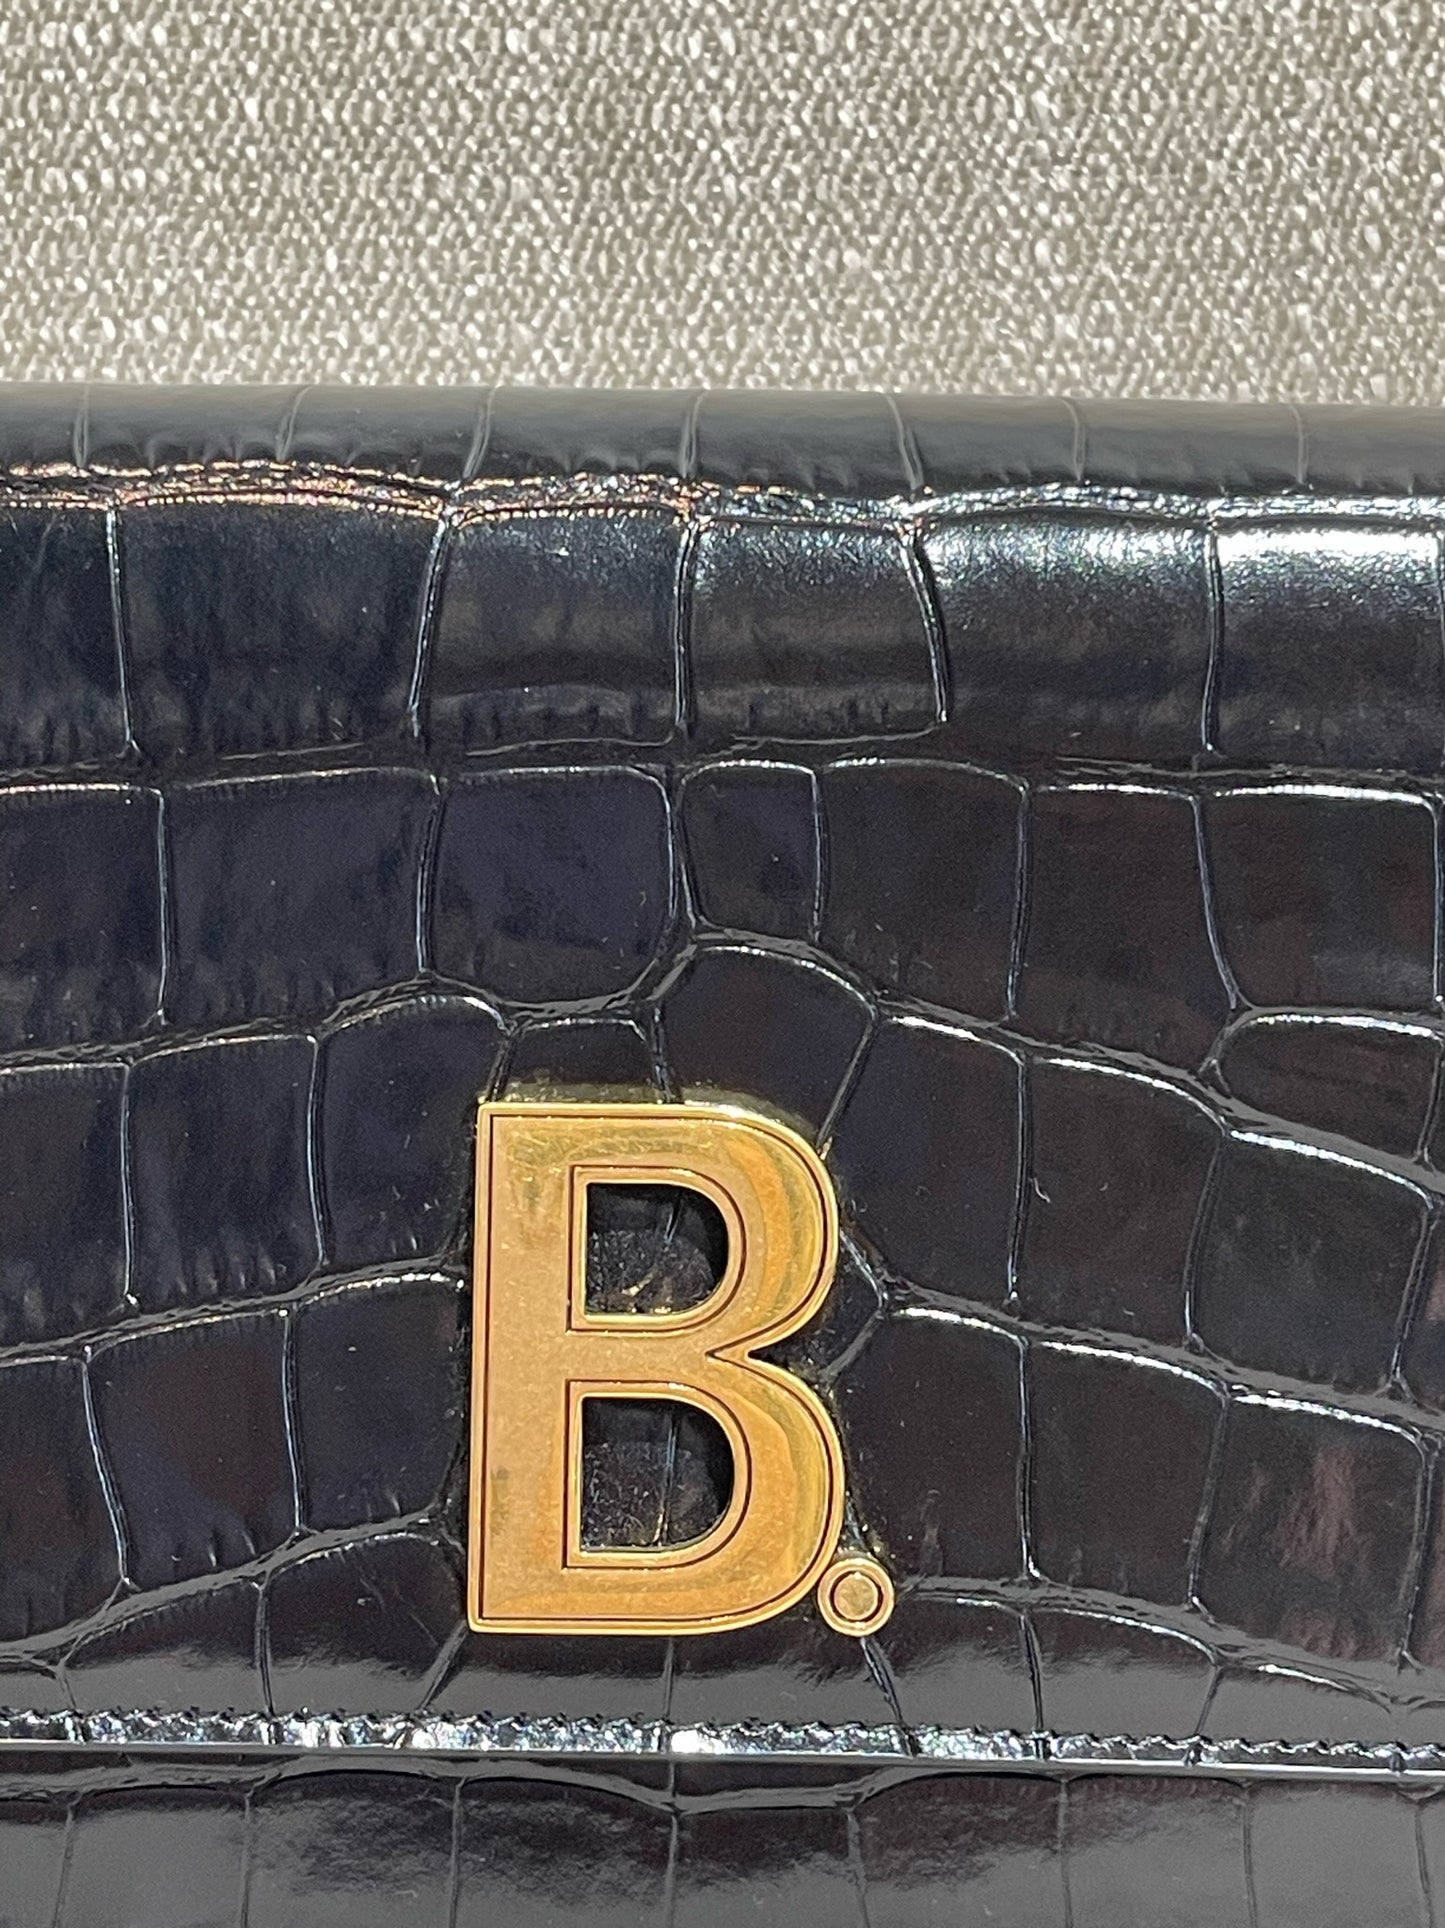 Sac Balenciaga B Wallet Chain S